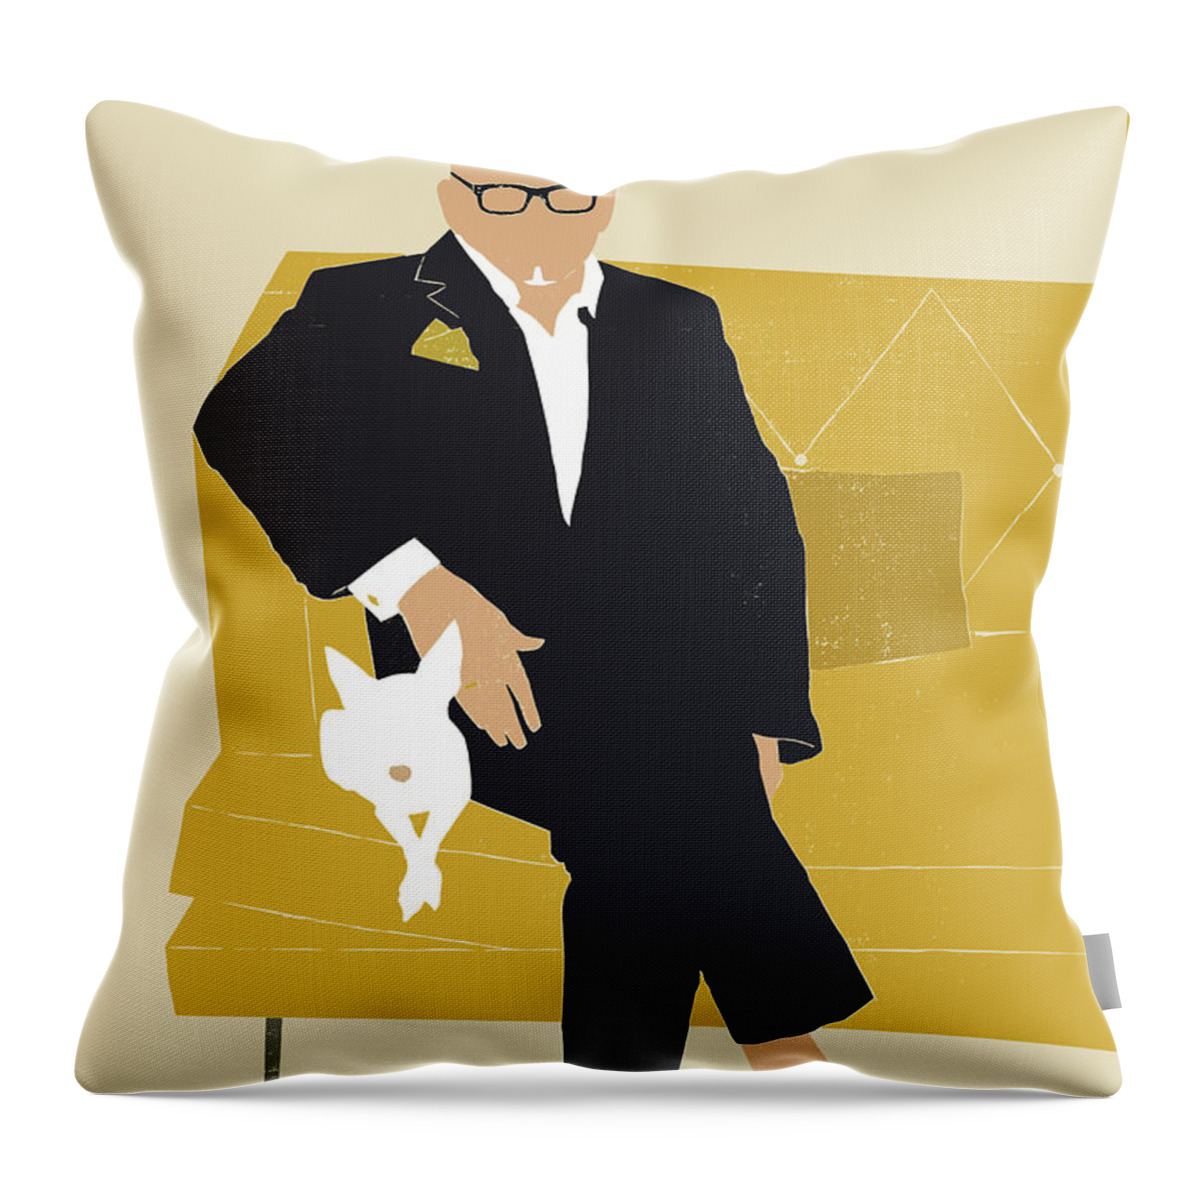 Dapper Man Throw Pillow featuring the digital art David and Tito by Mary Lynn Blasutta